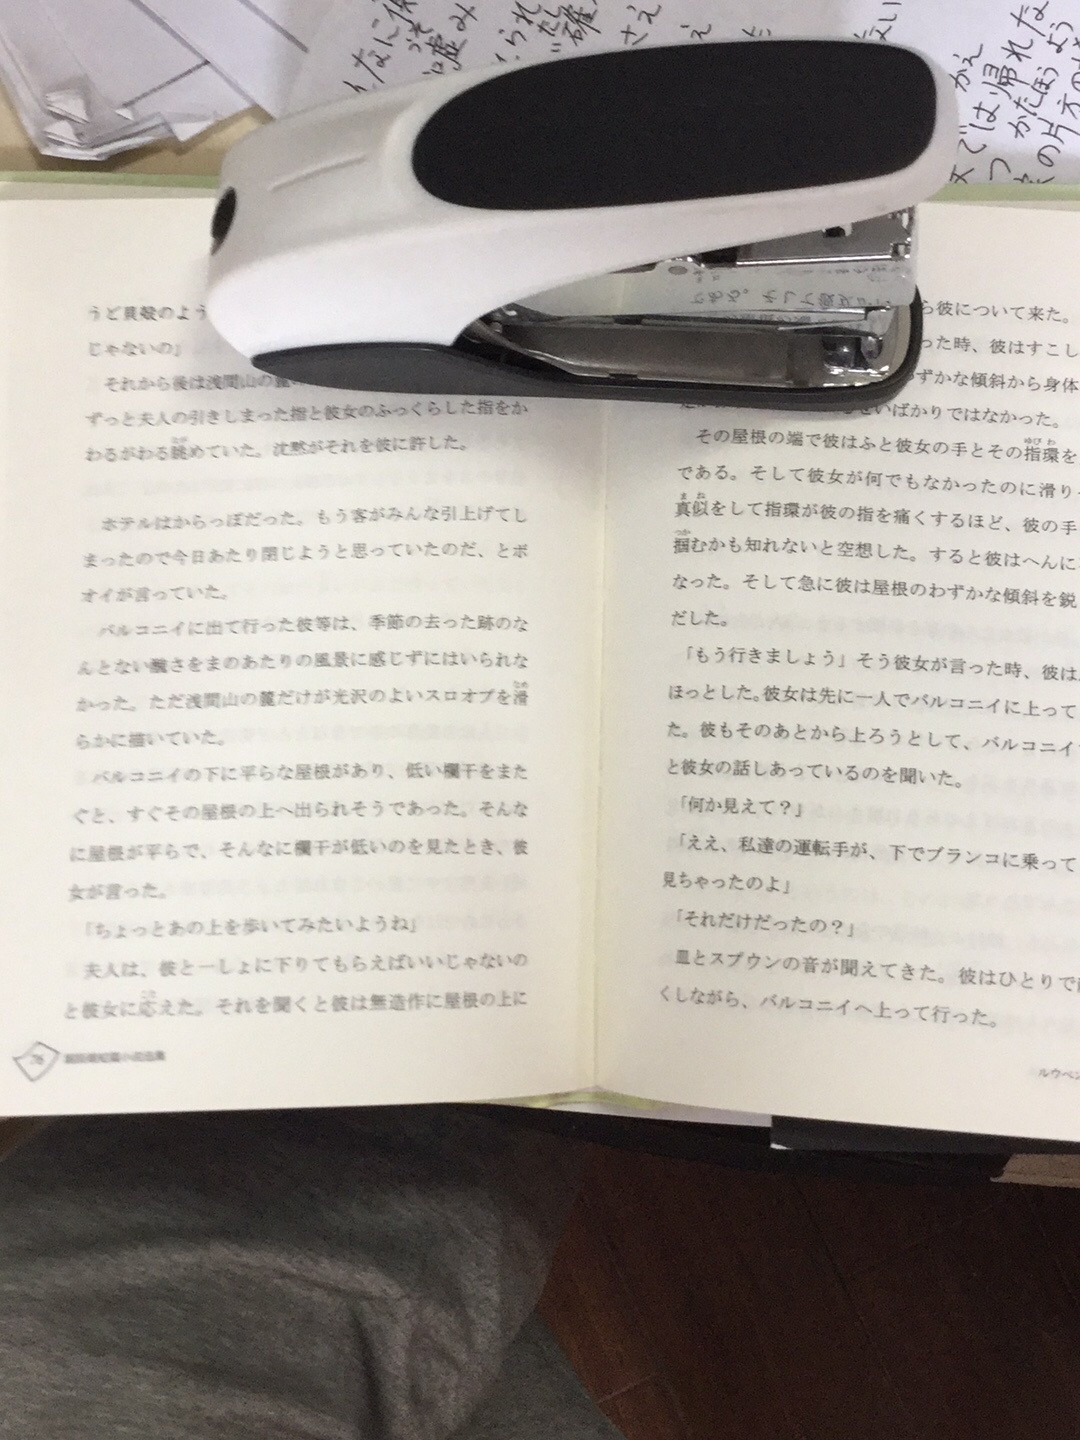 首次购买纯日语的书，挑战一下自己的水平